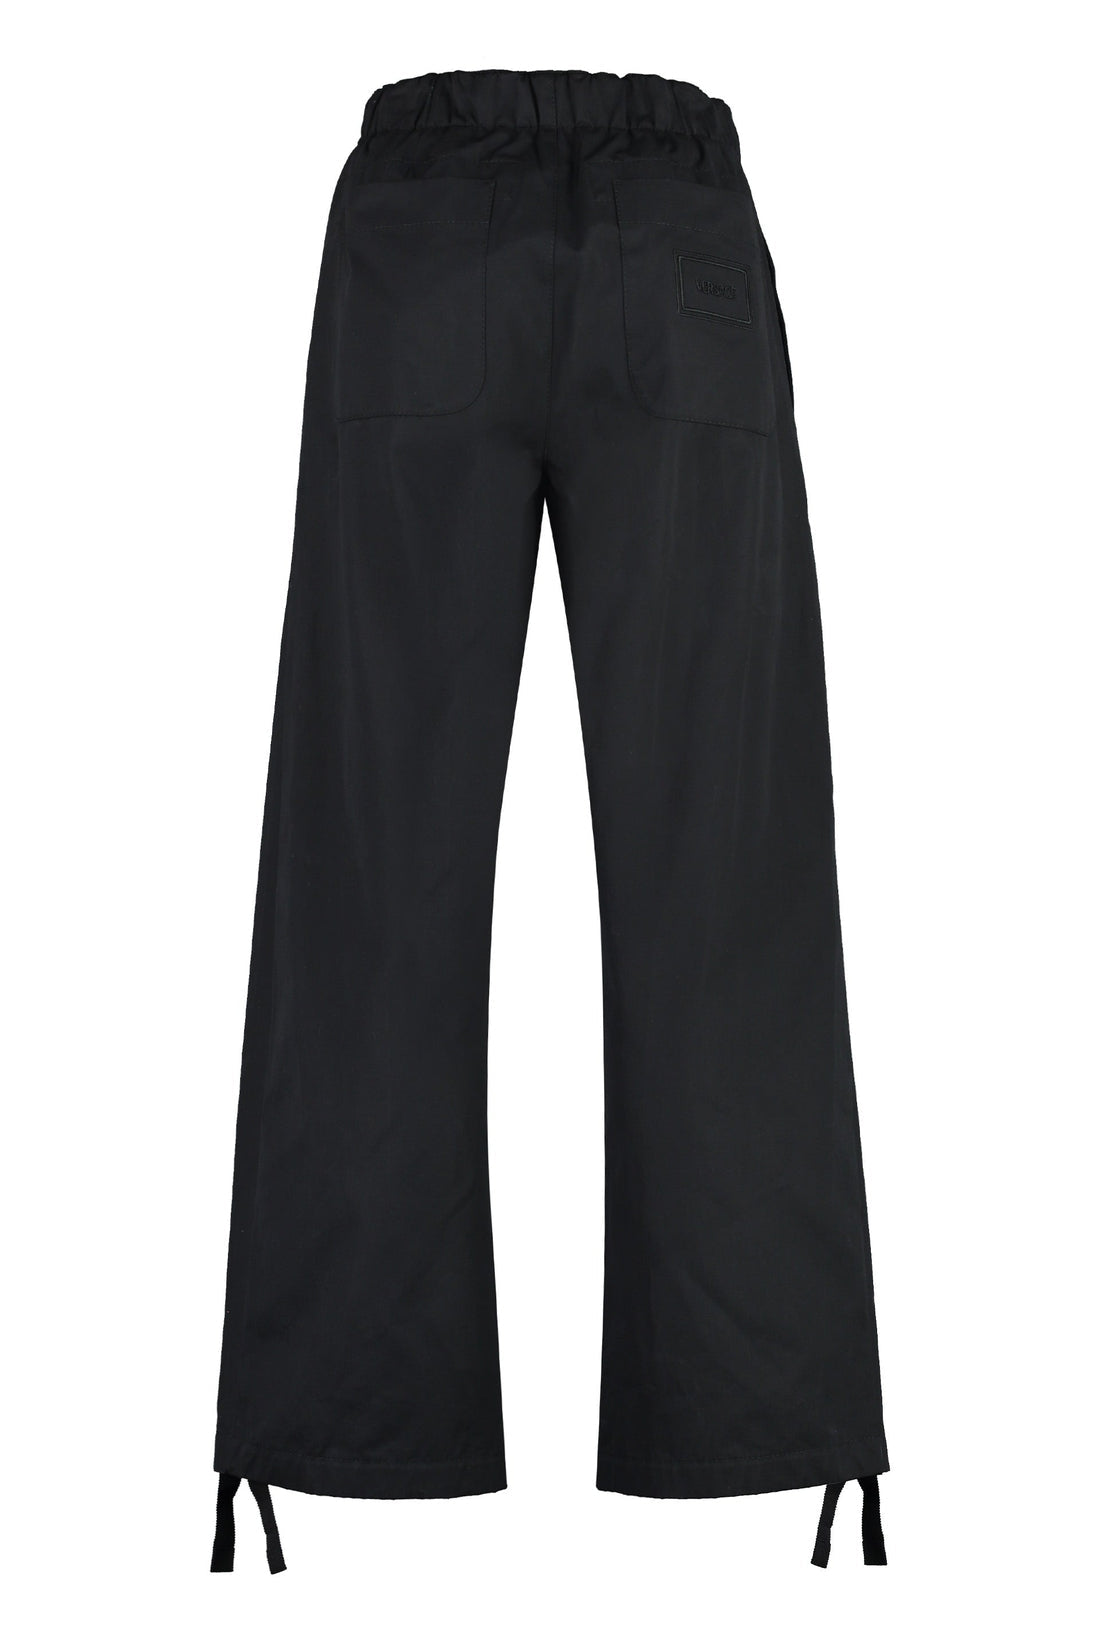 Versace-OUTLET-SALE-Cotton trousers-ARCHIVIST